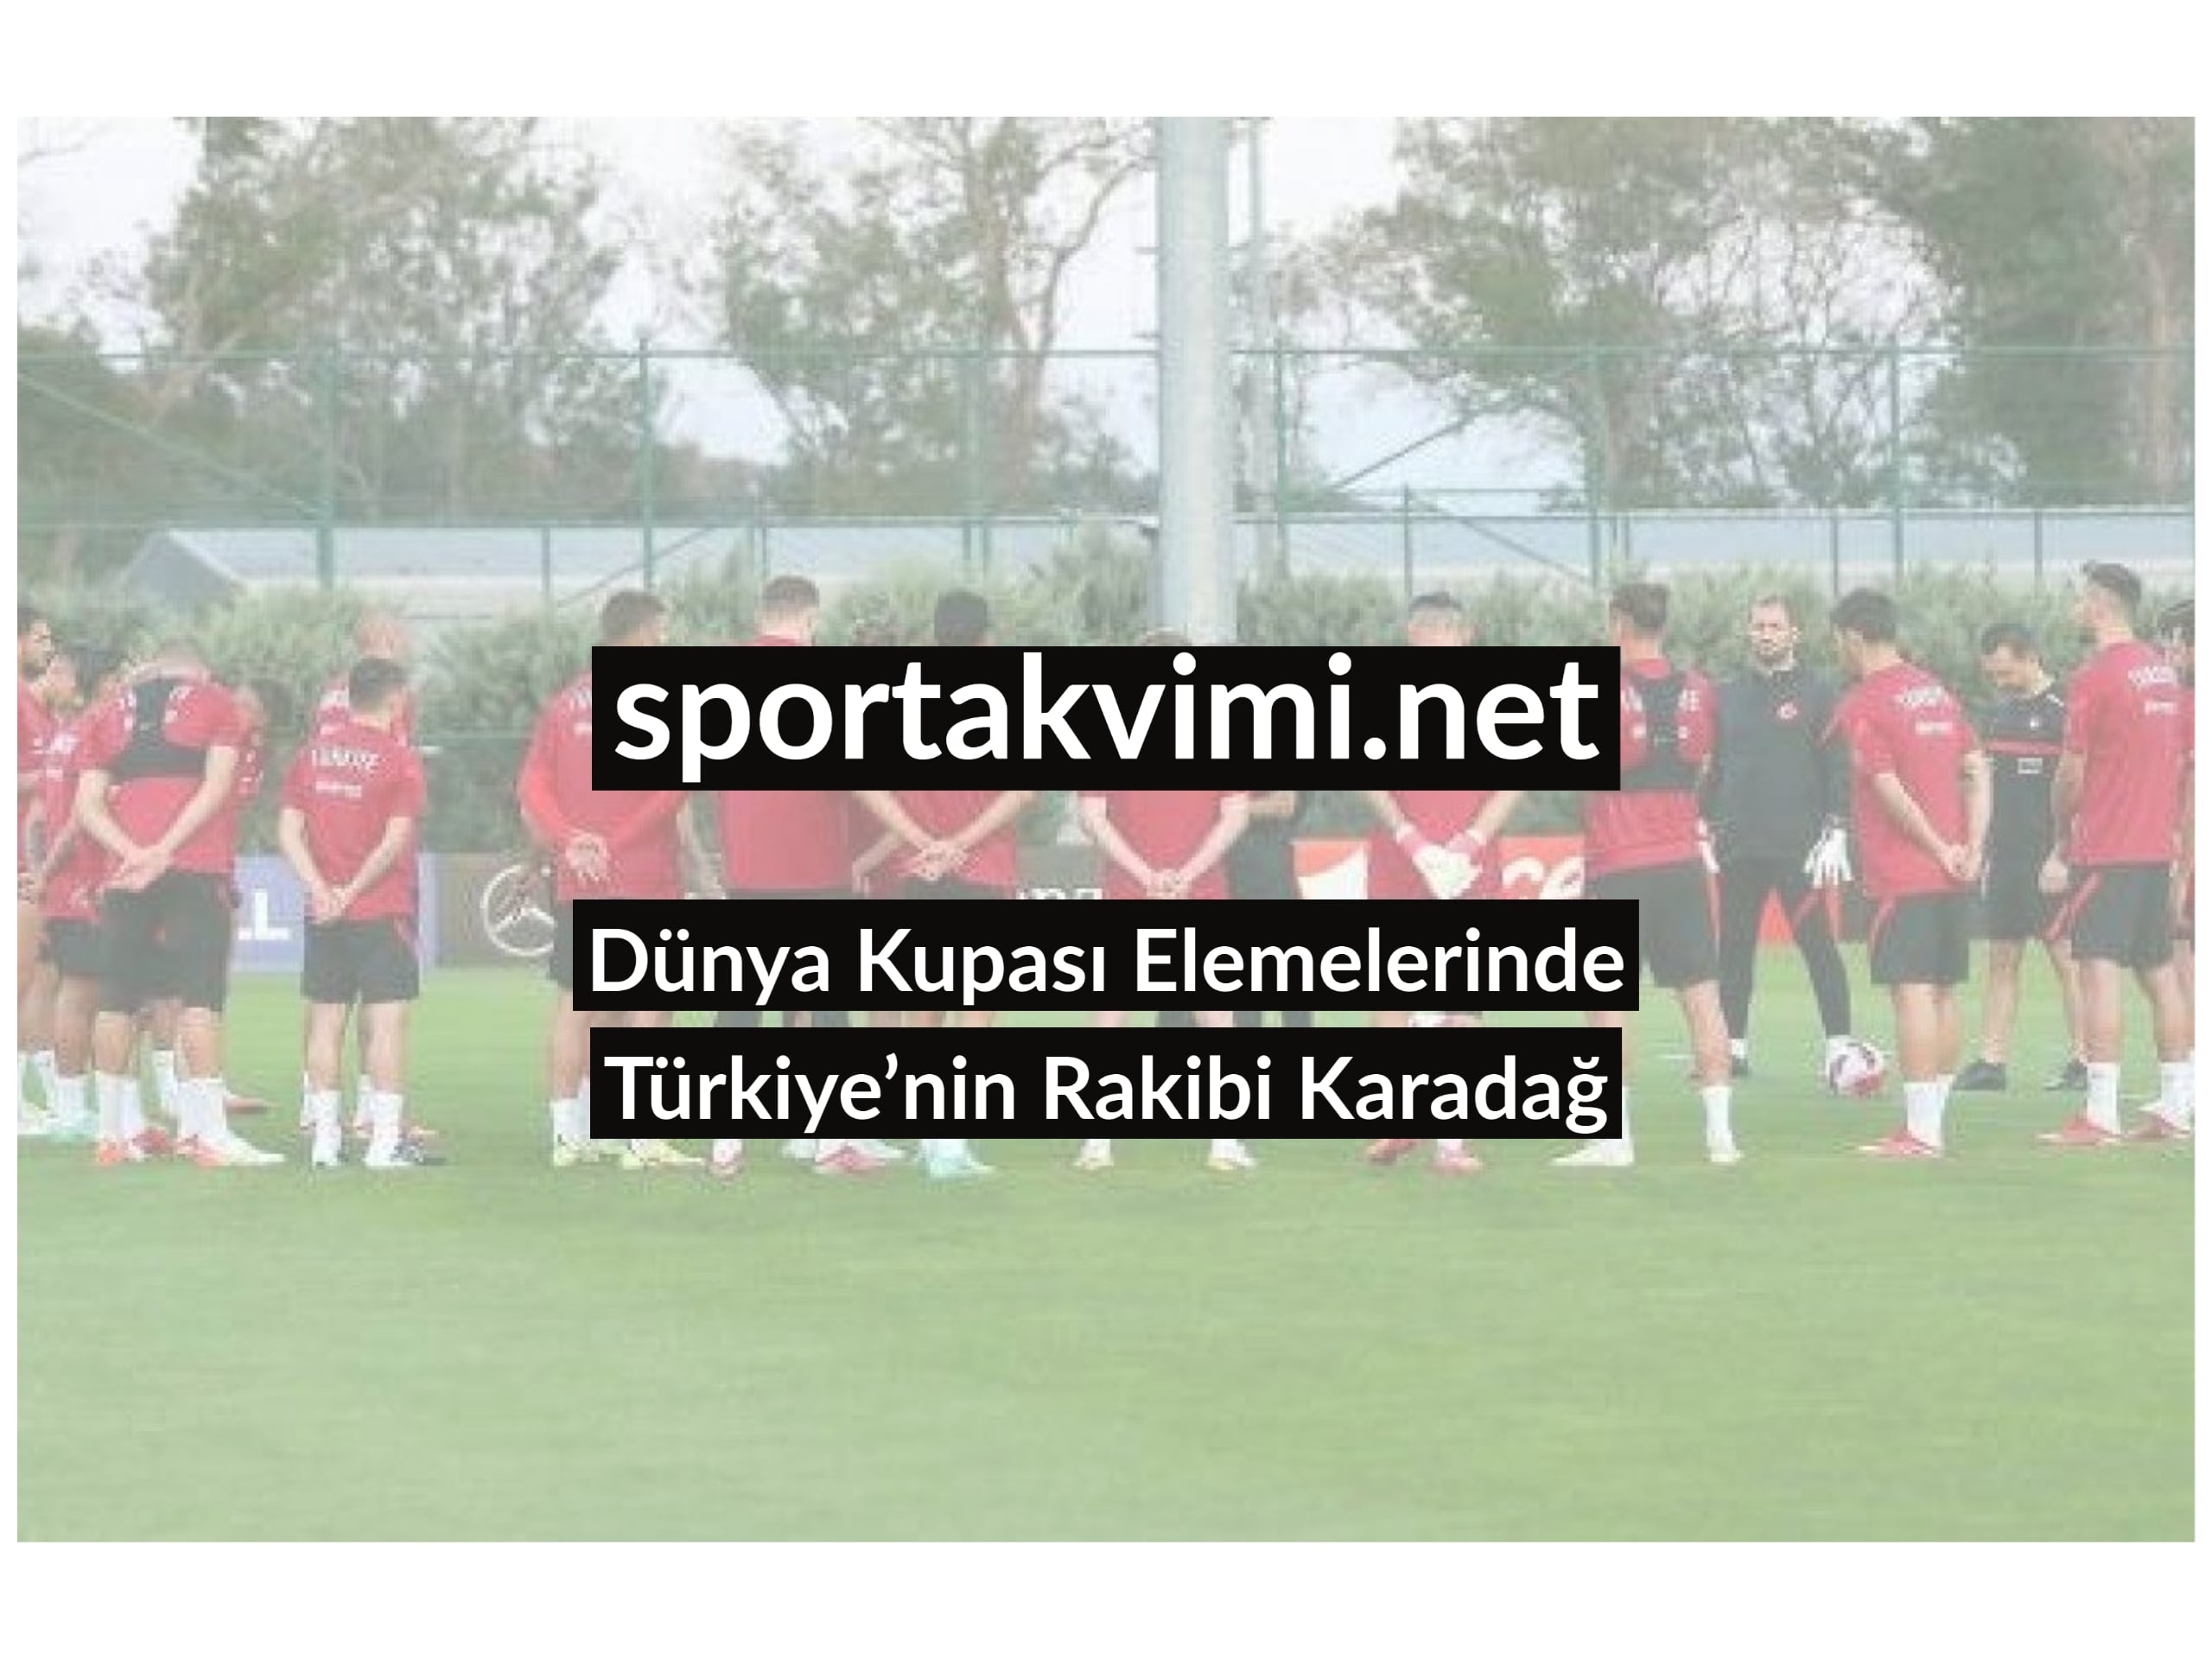 Dünya Kupası Elemelerinde Türkiye’nin Rakibi Karadağ